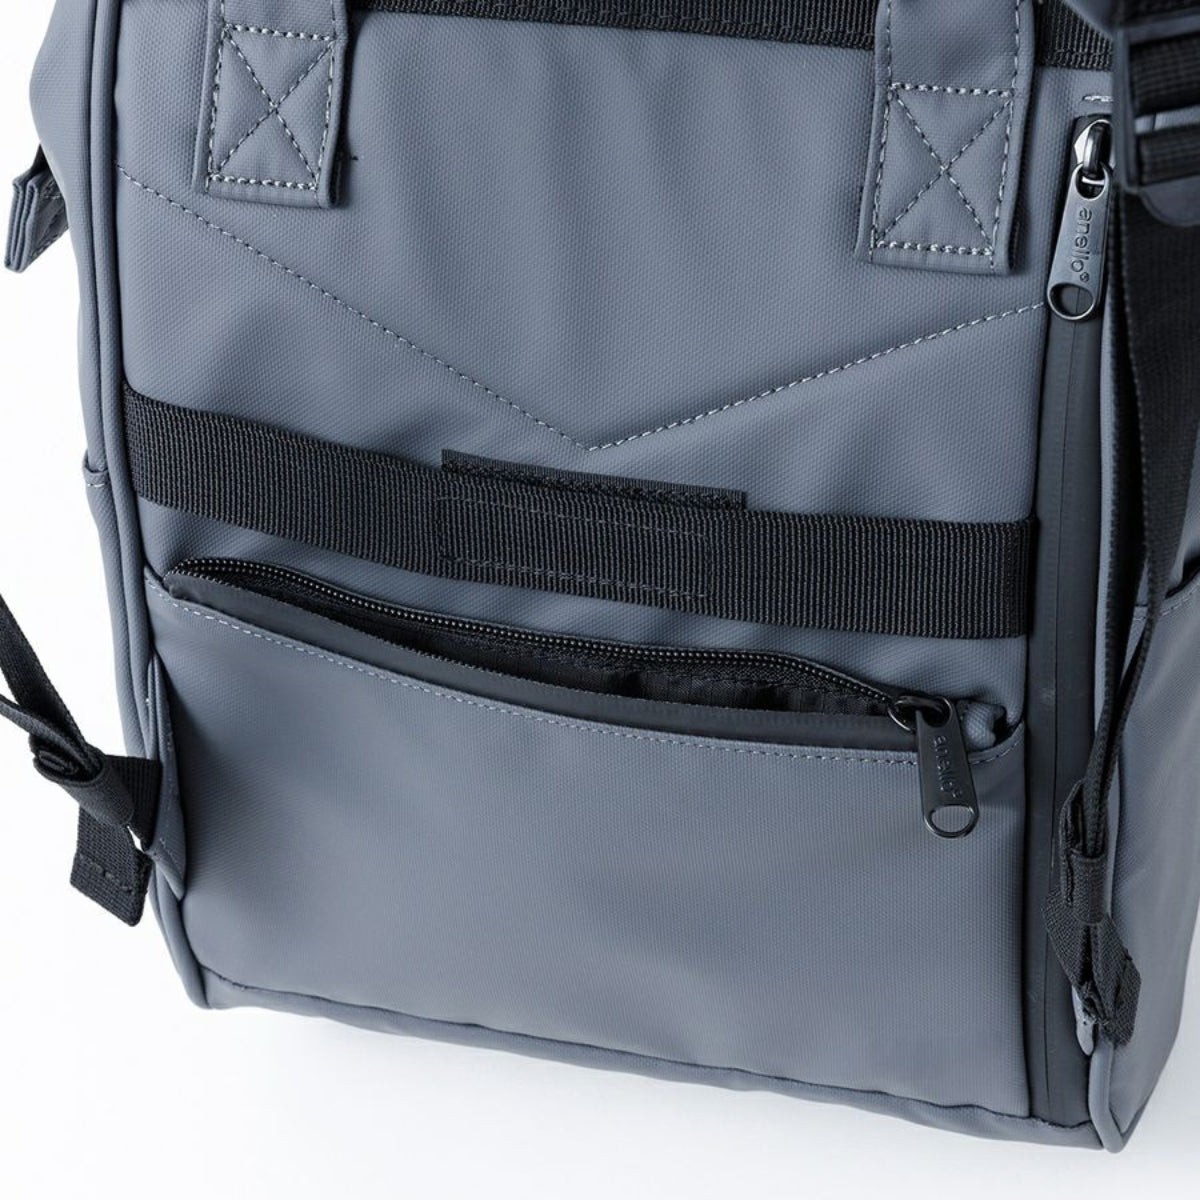 Anello Acqua Backpack Small in Grey